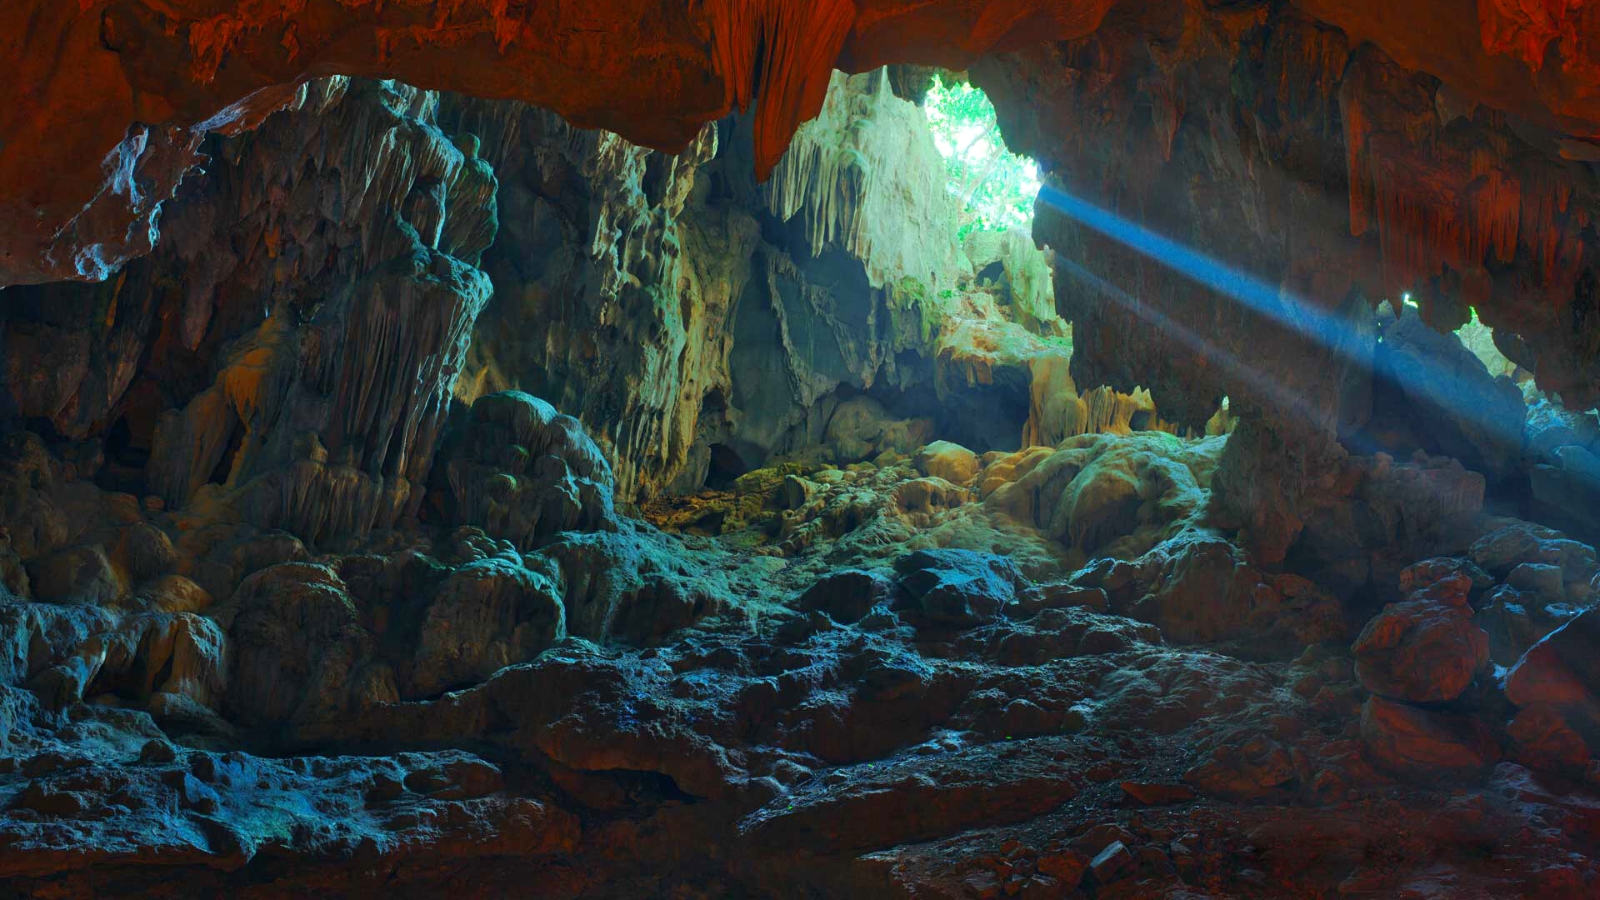 Dau Go Cave Halong Bay